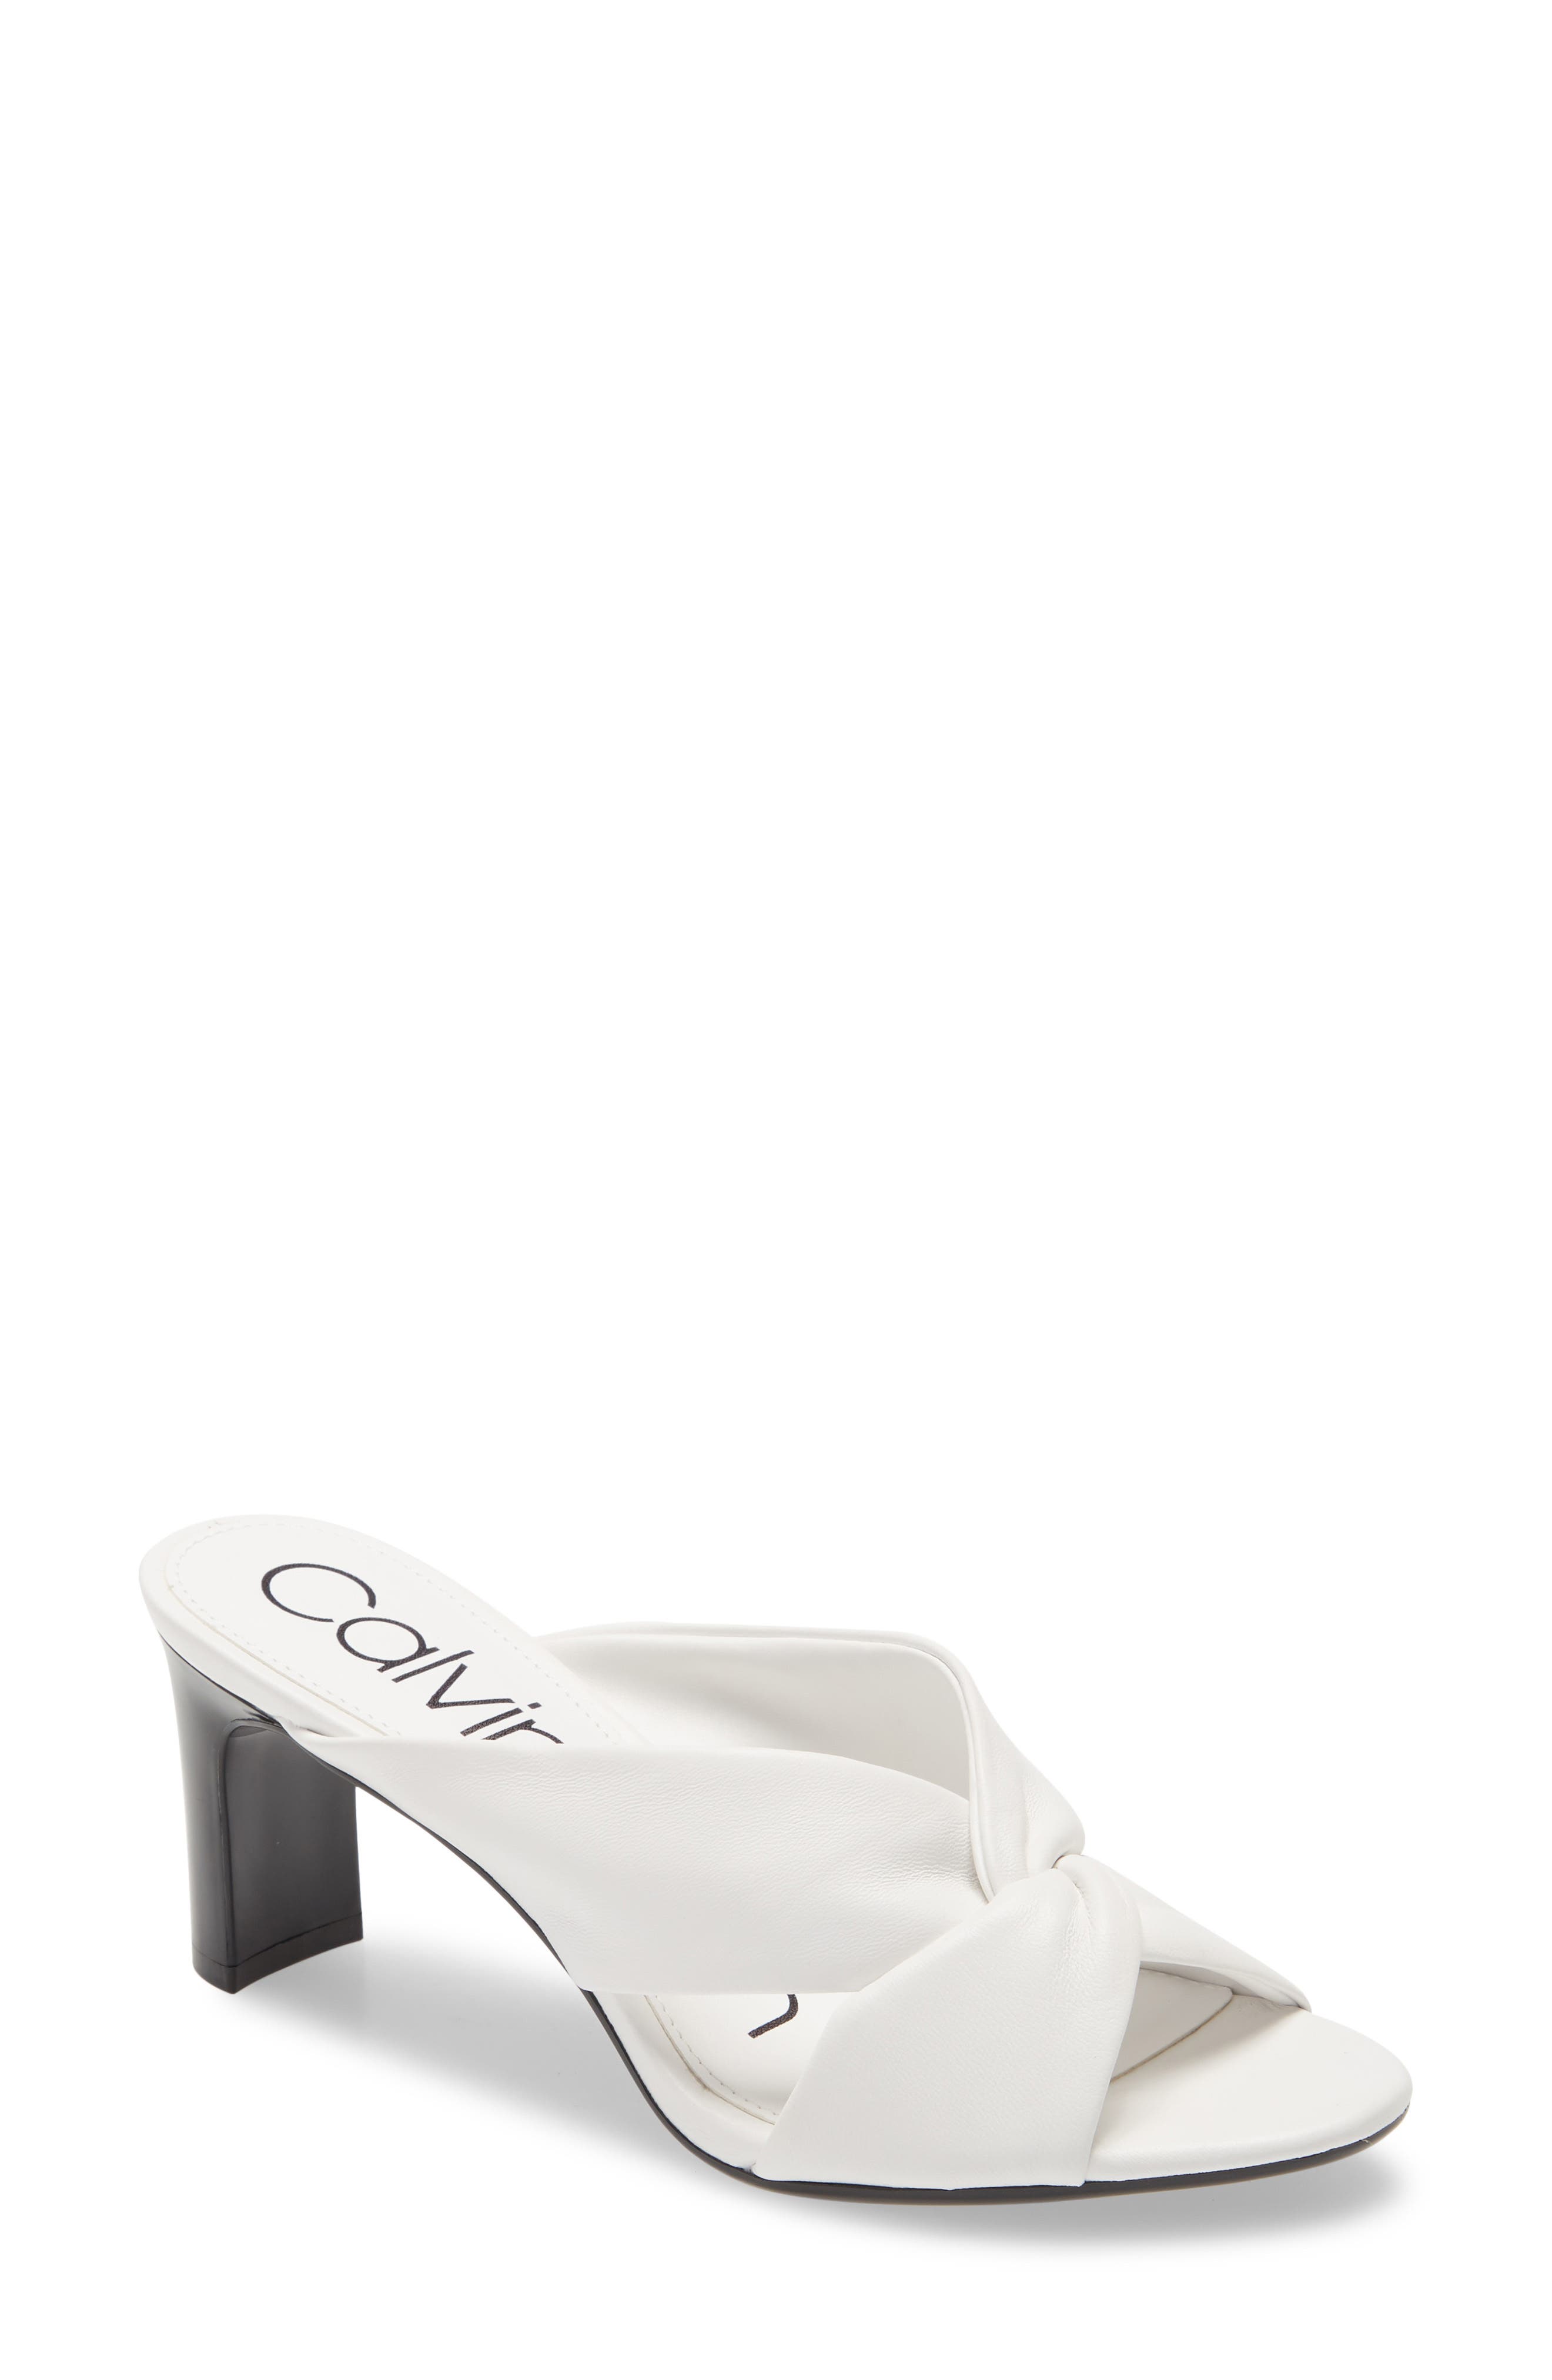 UPC 194060411255 product image for Women's Calvin Klein Omarion Sandal, Size 6.5 M - White | upcitemdb.com